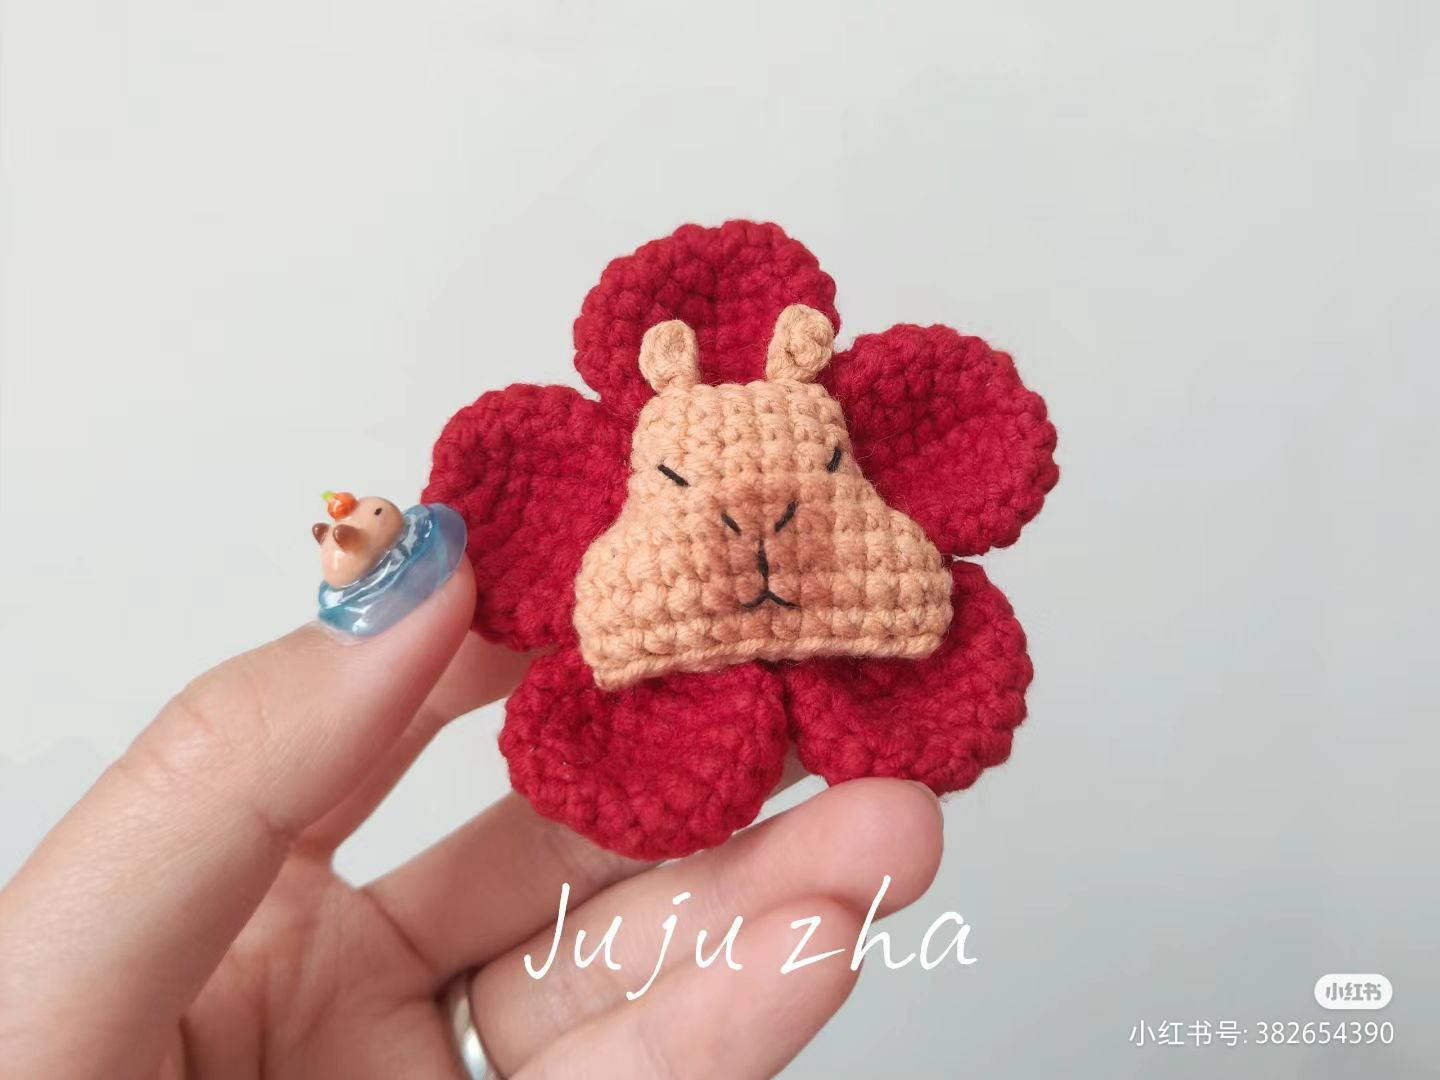 capybara keychain crochet pattern, capybara flower crown hair clip